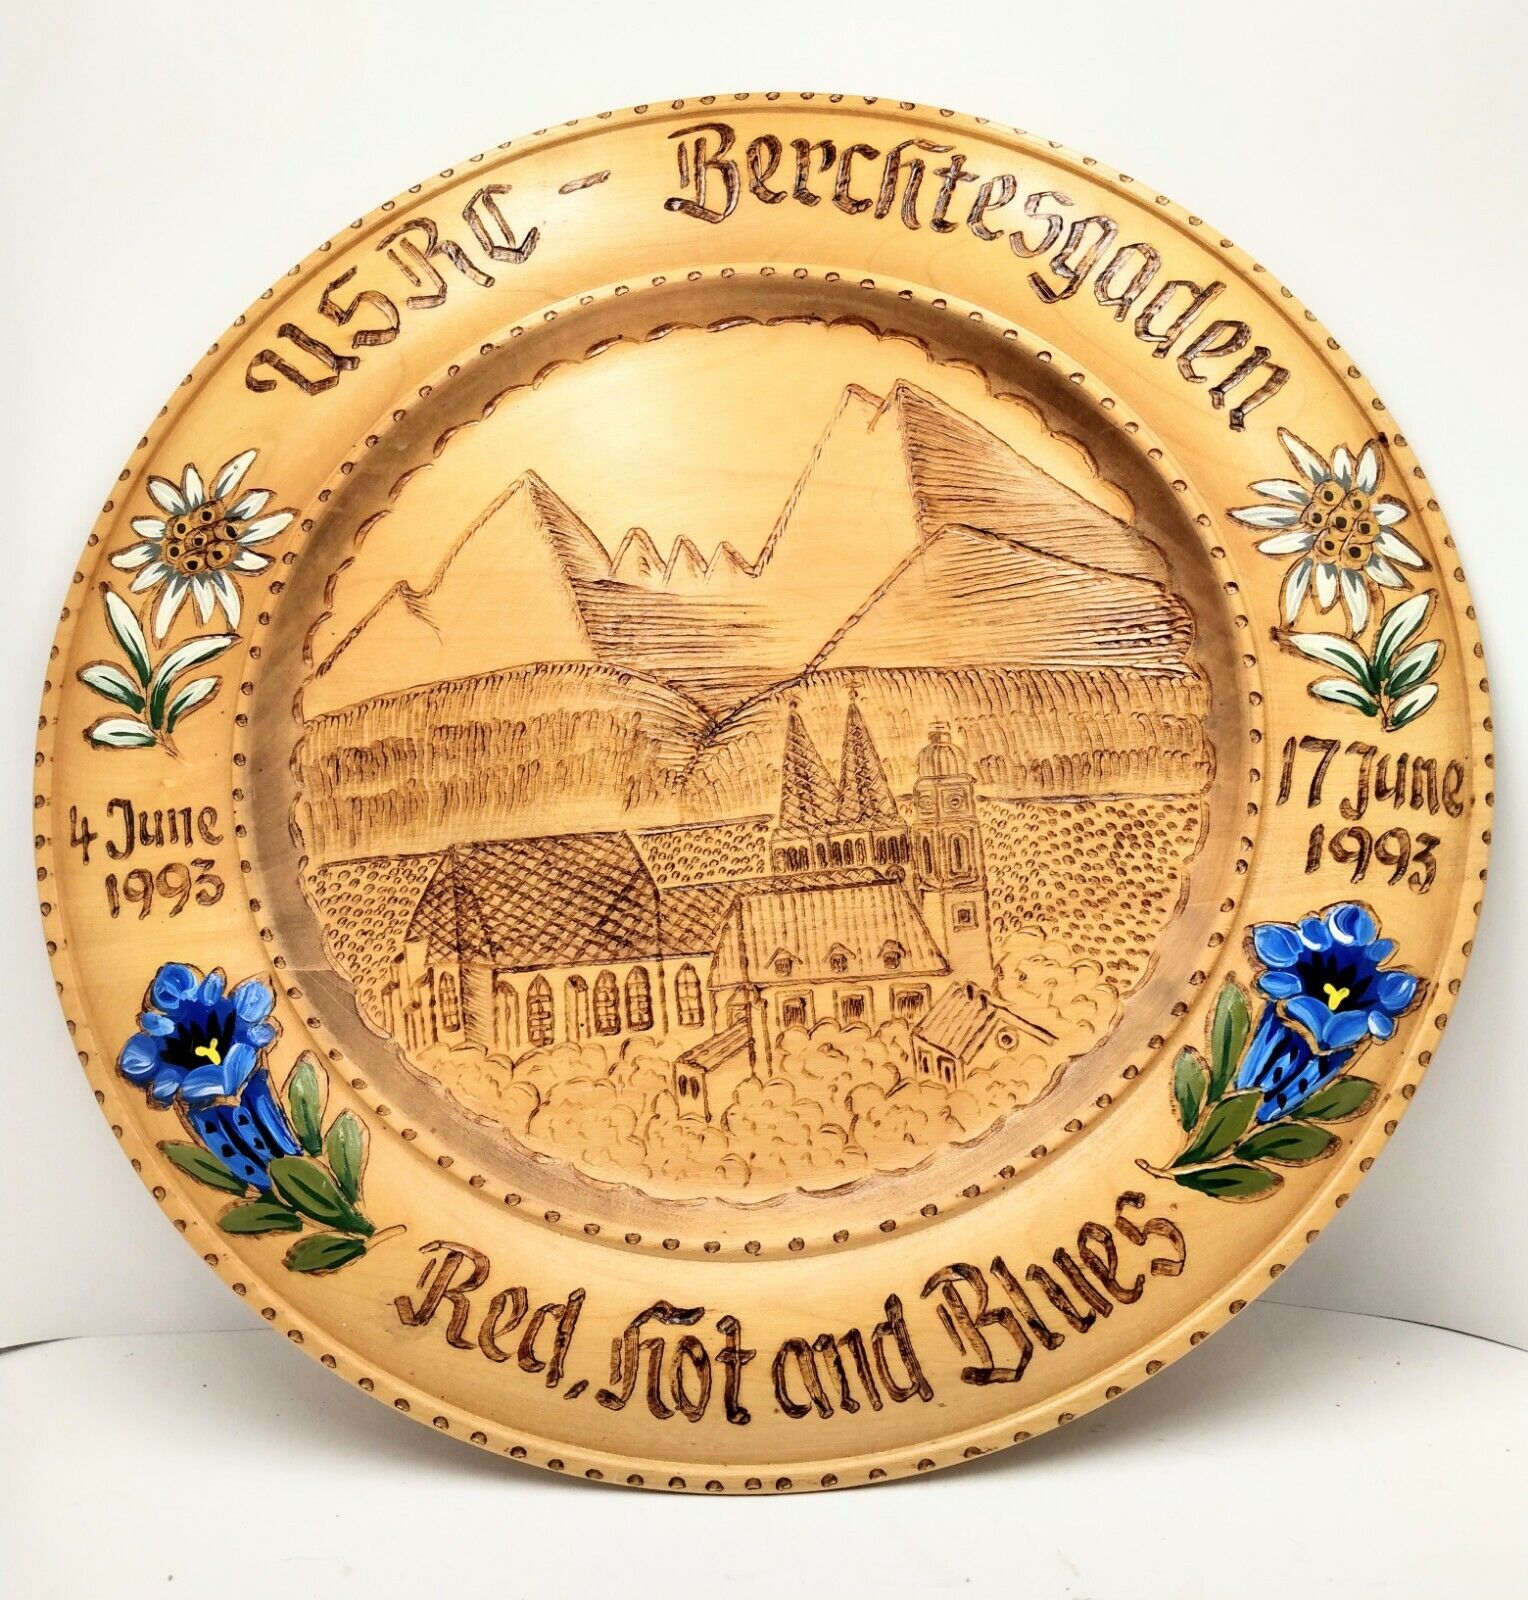 USRC - Berchtesgaden Wood  Red, Hot and Blues Souvenir Plate Vintage 1993